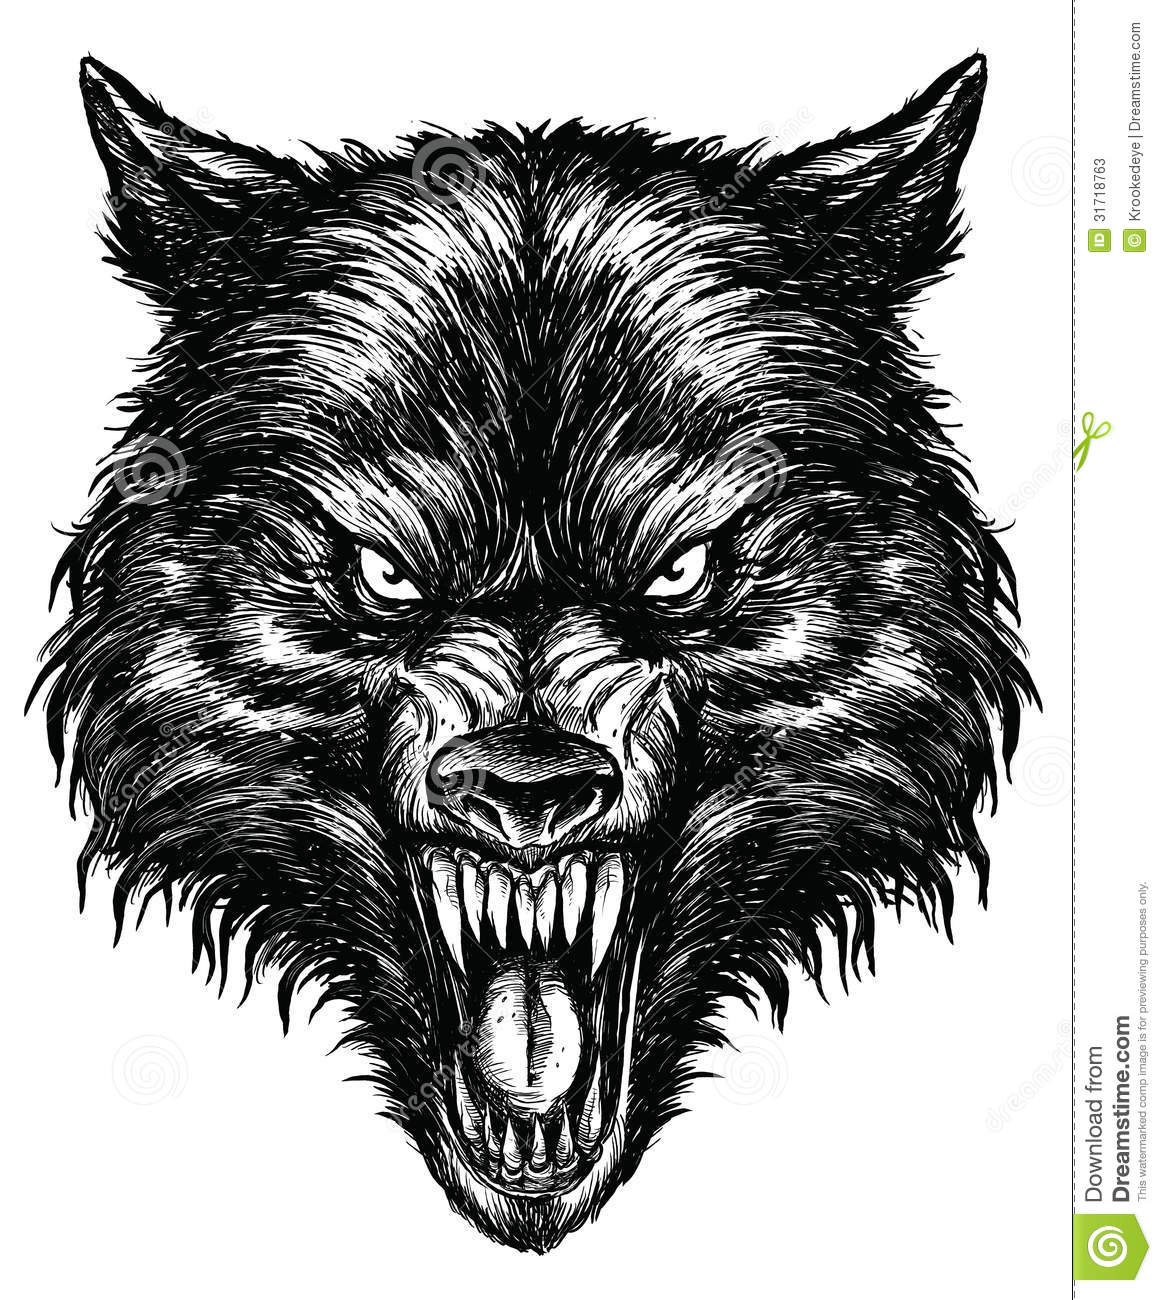 Тату волк с оскалом - символ силы и свободы